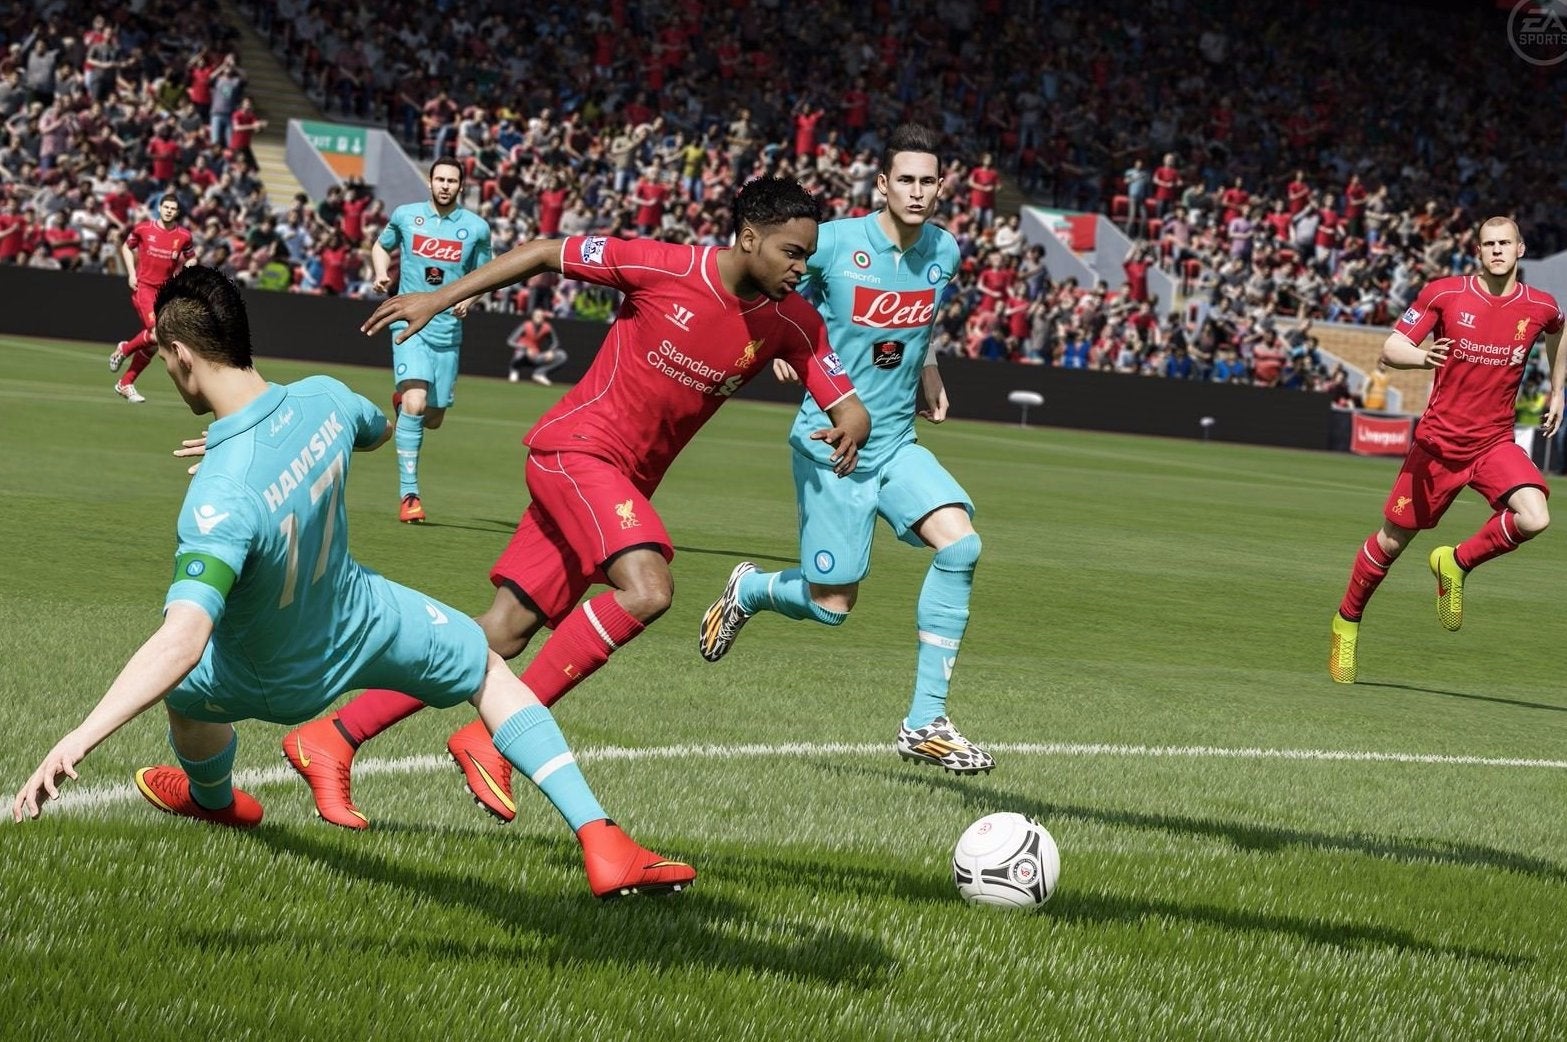 Immagine di FIFA 15 disponibile gratuitamente per gli abbonati EA Access